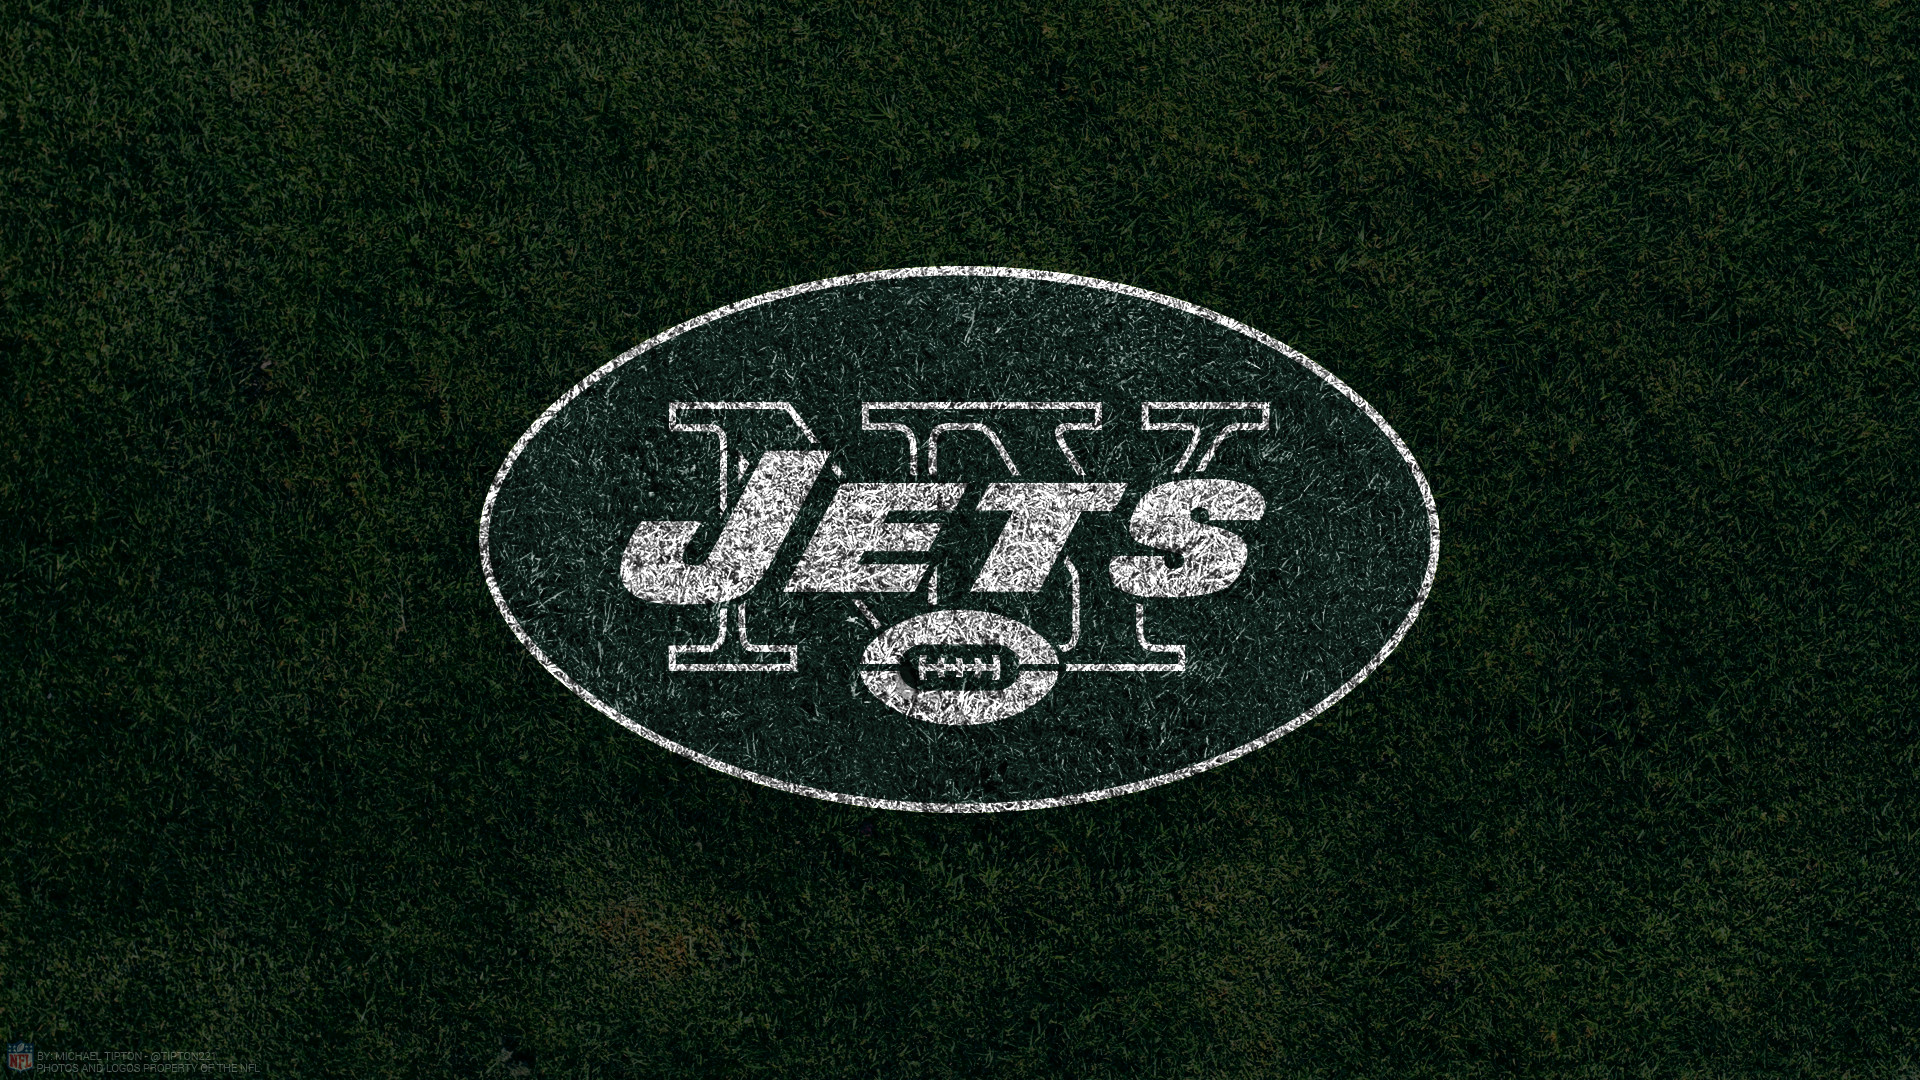 New York Jets Football Mobile Wallpaper Marvelous